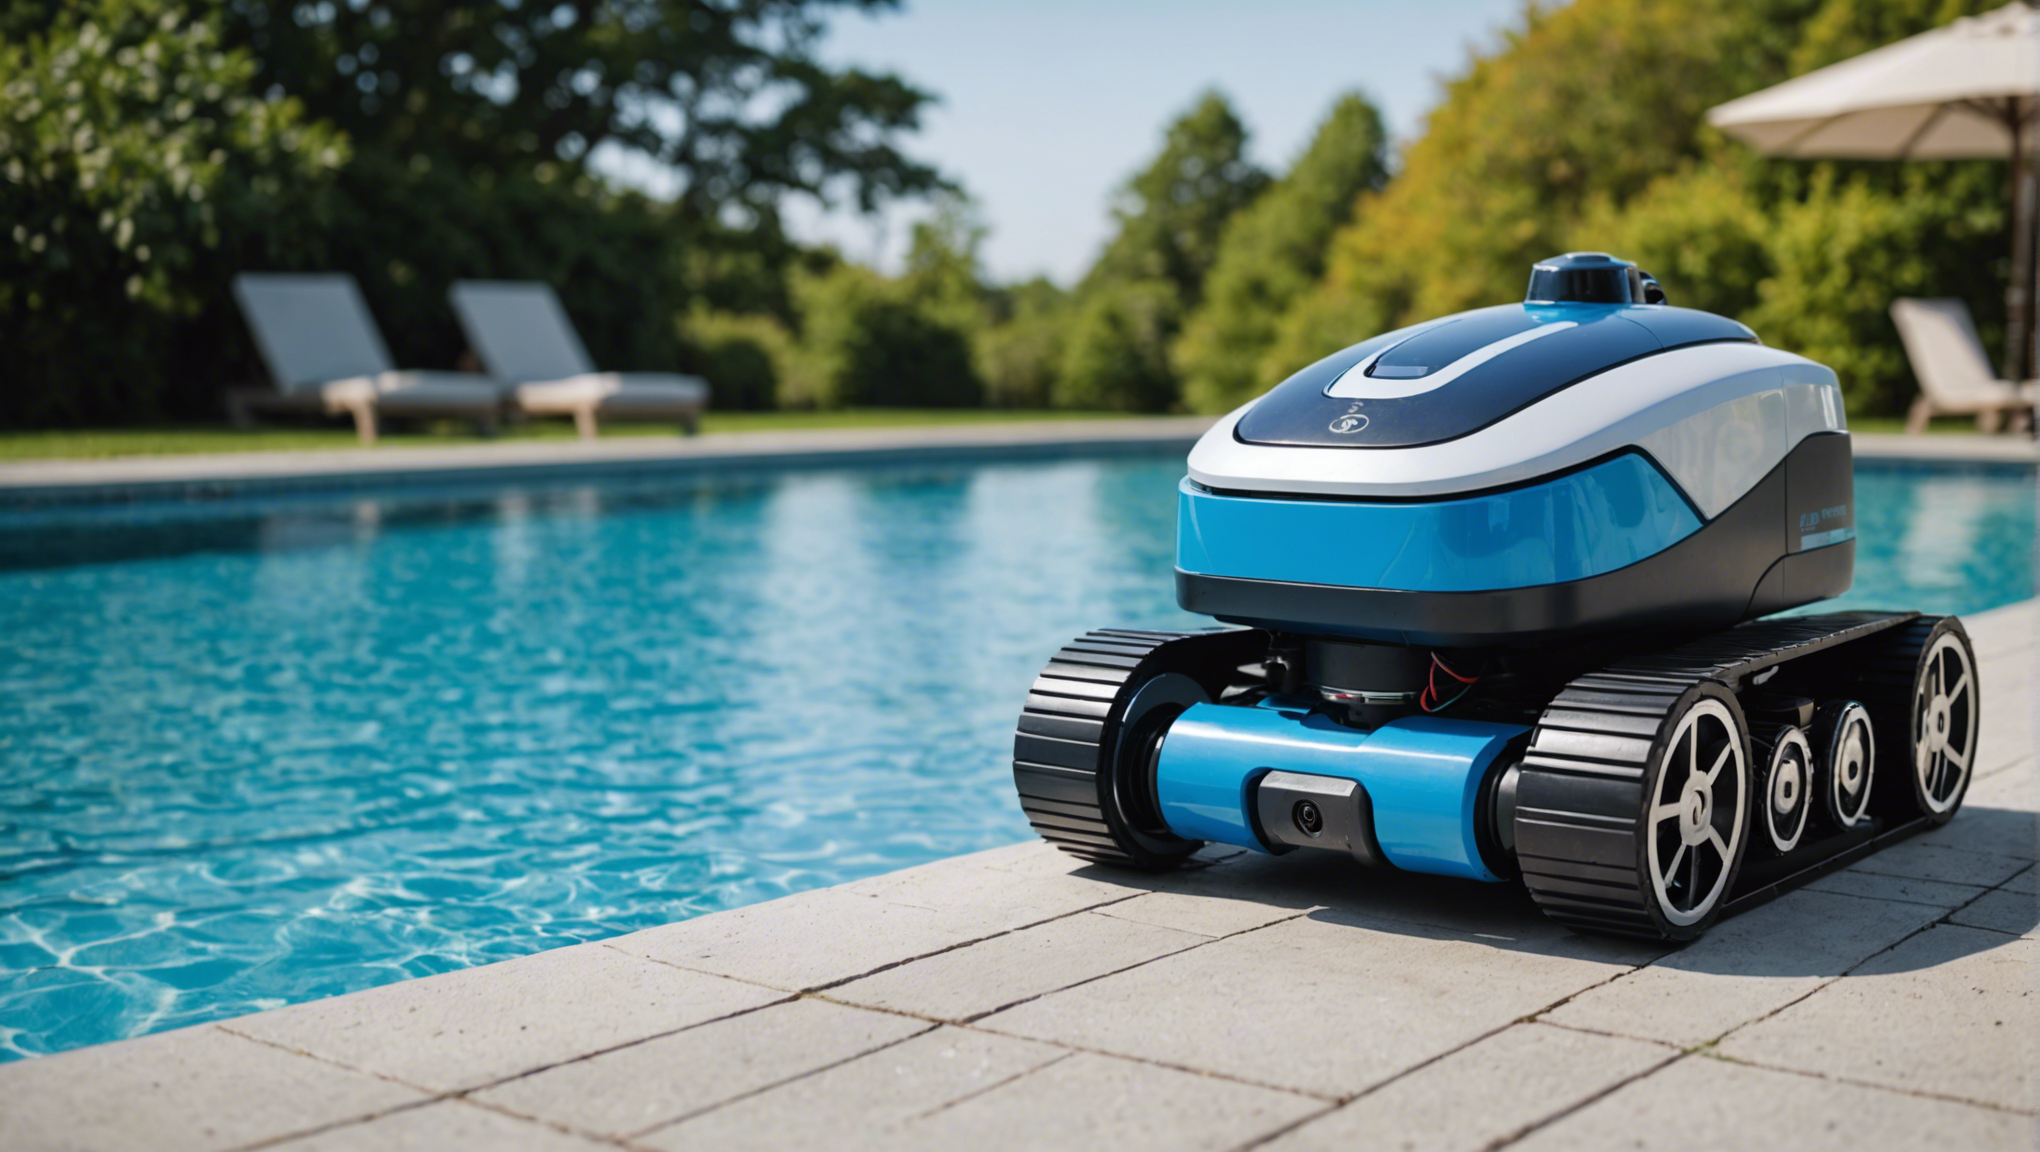 découvrez comment choisir la puissance idéale pour votre robot de piscine et profiter d'un nettoyage efficace et rapide. conseils et astuces pour entretenir votre bassin en toute simplicité.